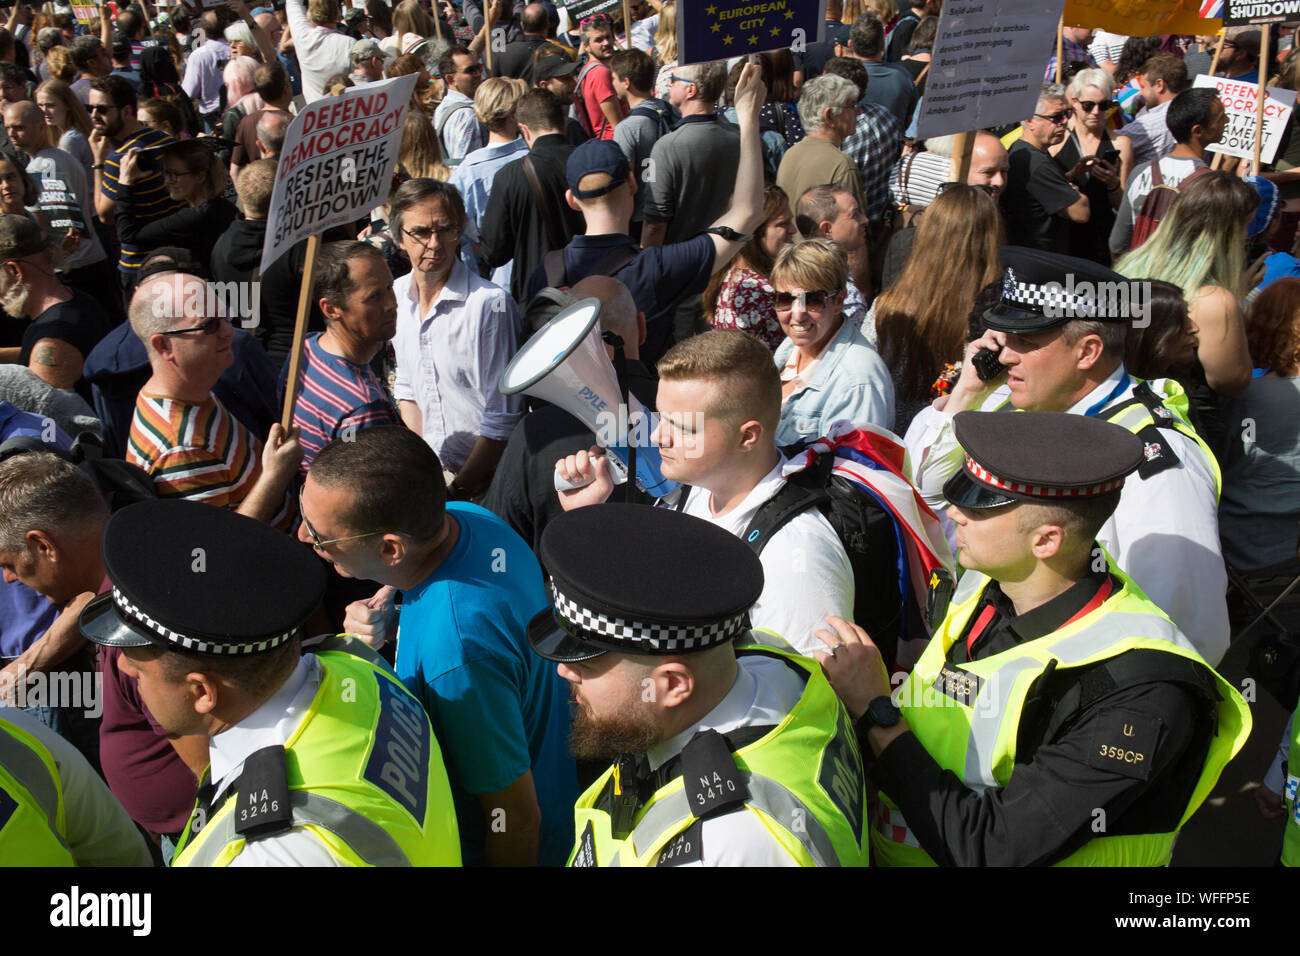 Des milliers de manifestants ont manifesté devant Downing Street, exprimant leur préoccupation de la suspension du Parlement à ce moment critique. Banque D'Images